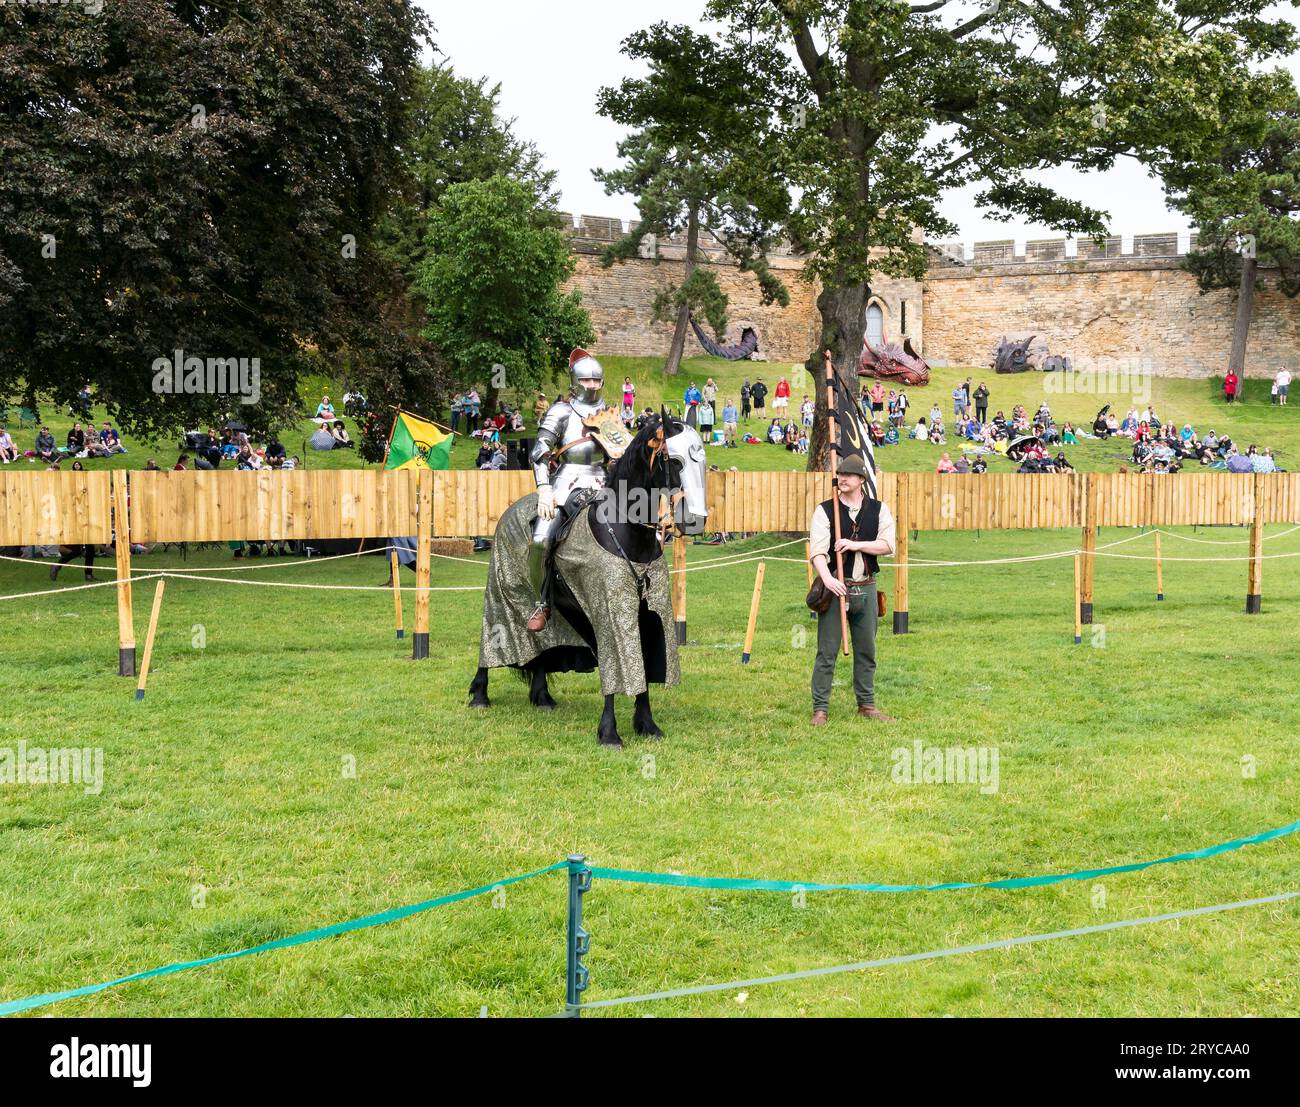 Cavaliere a cavallo con squire che regge uno striscione che prende gli applausi del pubblico, il castello di Lincoln, Lincoln City, Lincolnshire, Inghilterra, REGNO UNITO Foto Stock